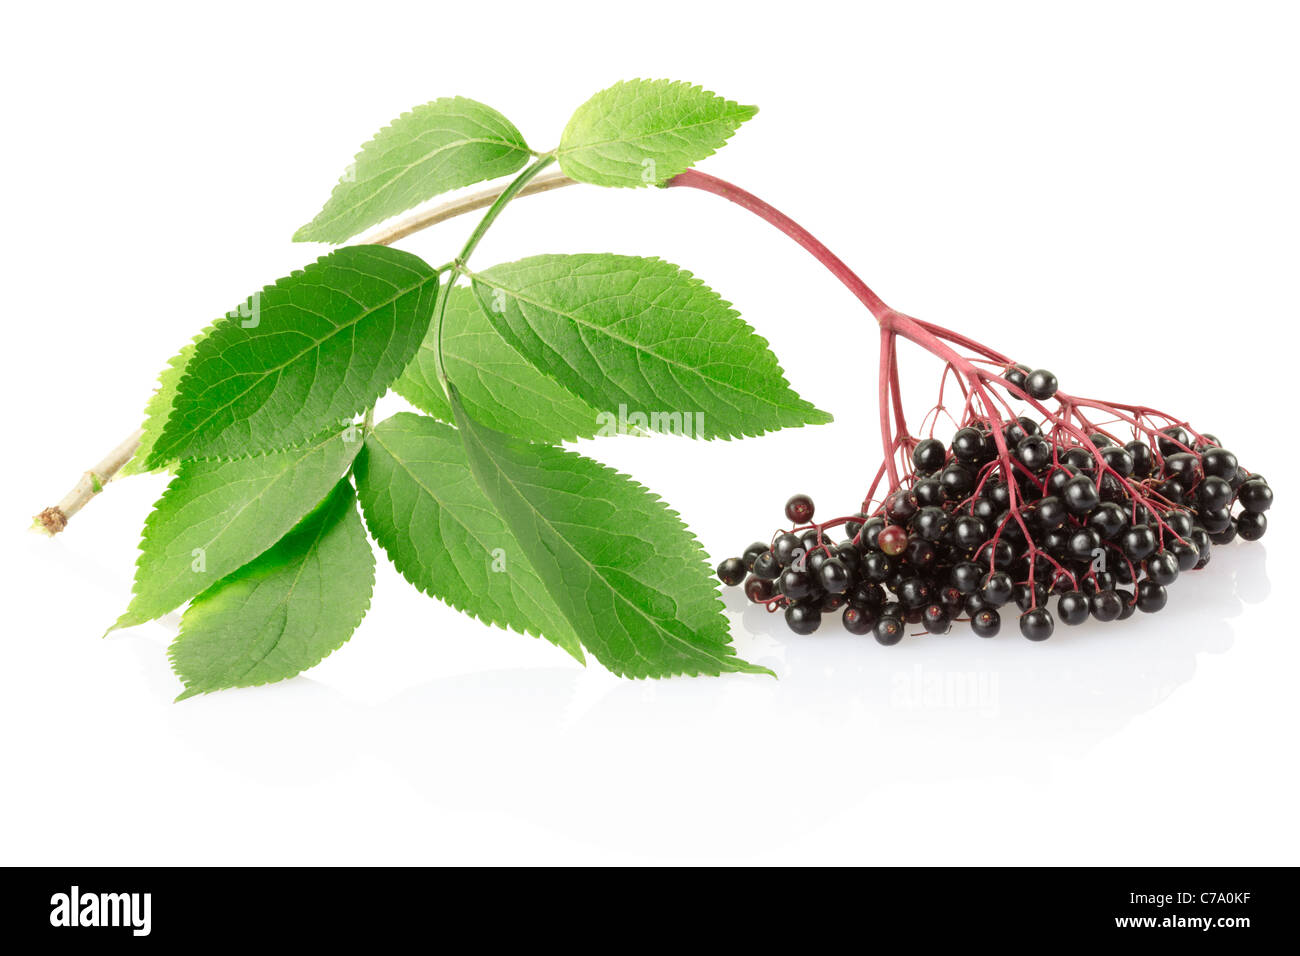 Elderberry, sambucus nigra branch Stock Photo